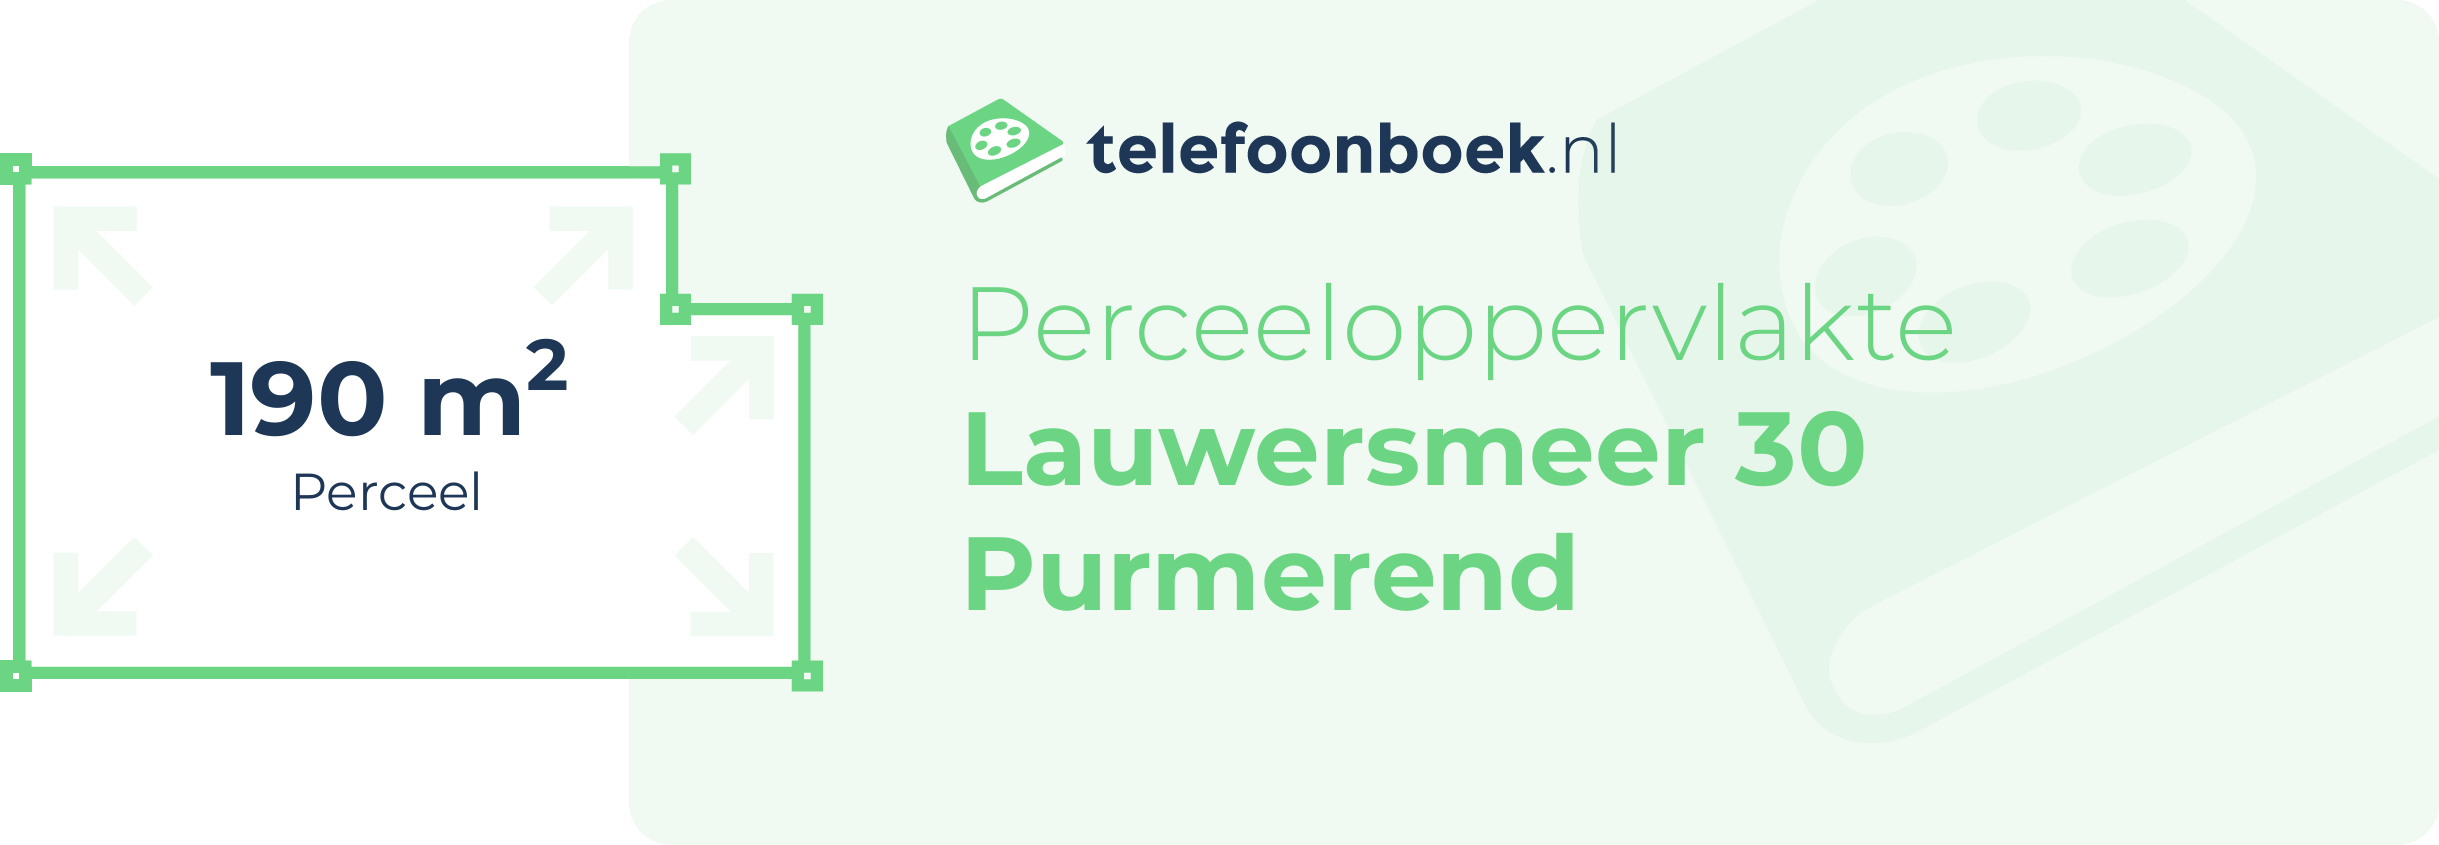 Perceeloppervlakte Lauwersmeer 30 Purmerend